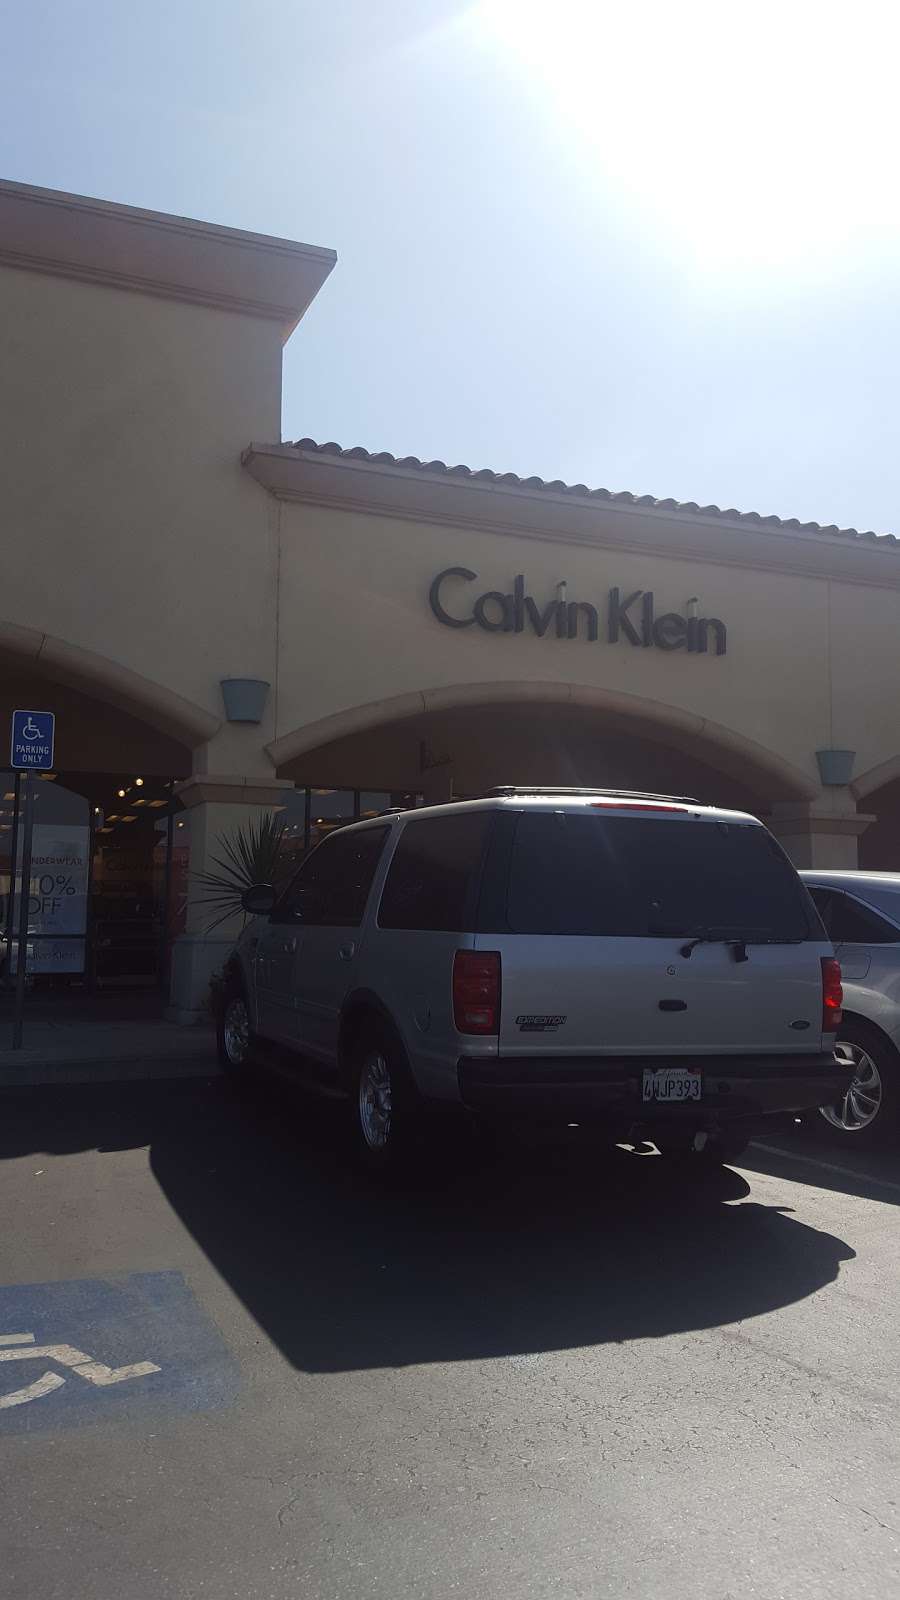 Calvin Klein Outlet | 950 Camarillo Center Dr #958, Camarillo, CA 93010 | Phone: (805) 482-9004